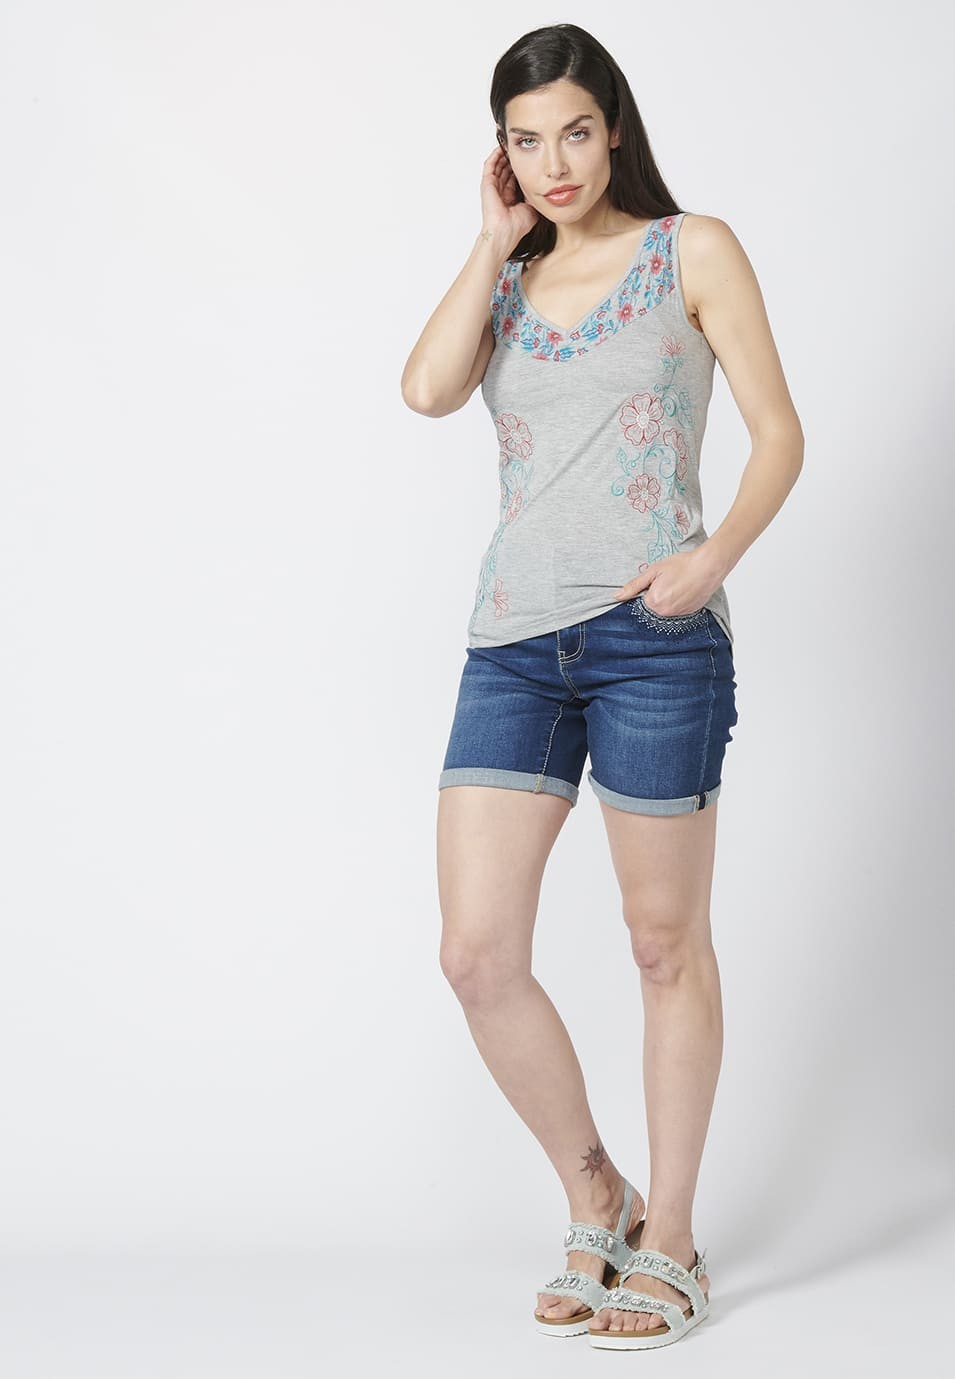 Camiseta Top tirantes con escote en Pico y Estampado y Bordados Florales para Mujer color Gris 5